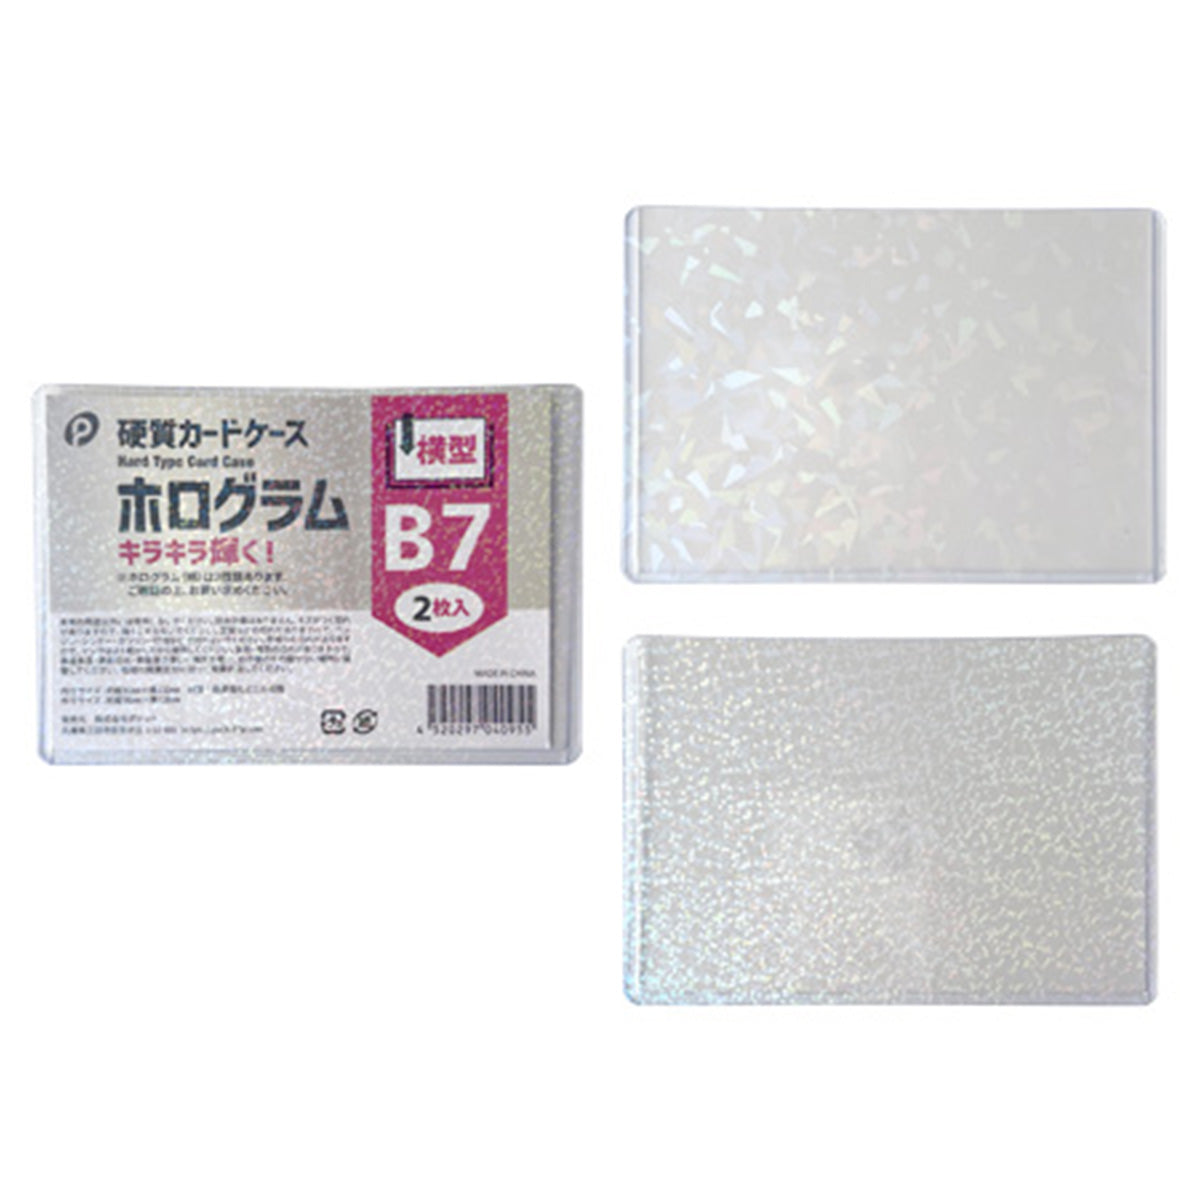 ホログラム硬質カードケース横型 B7 2枚入  0894/352129